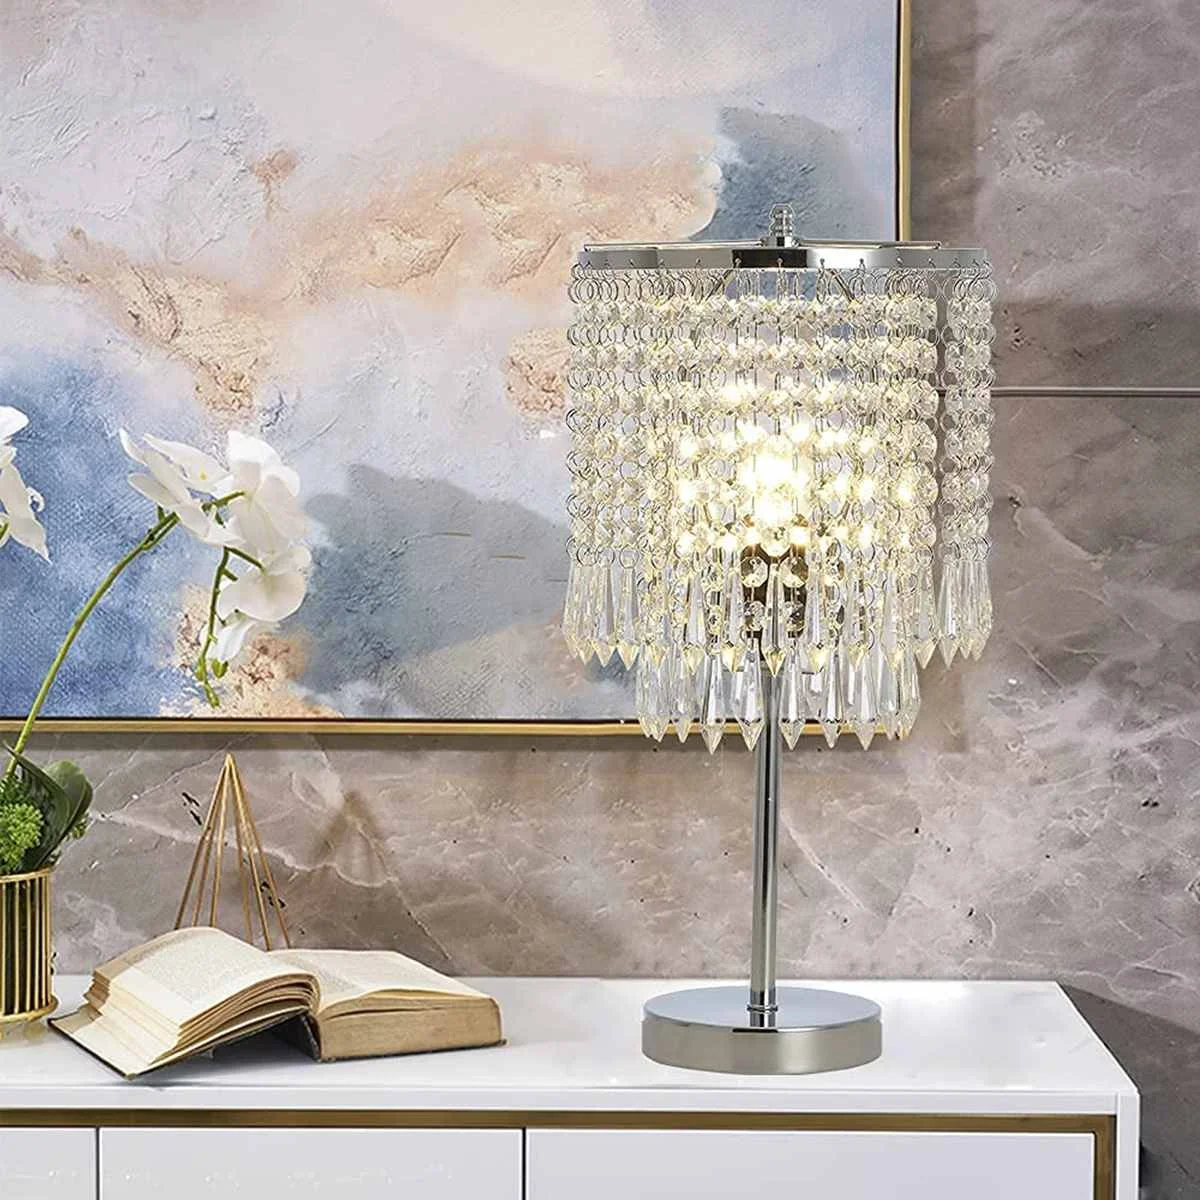 

Хрустальная акриловая настольная лампа K9, элегантная прикроватная лампа, светодиодная настольная лампа для журнального столика, декоративсветильник светильники для гостиной и дома